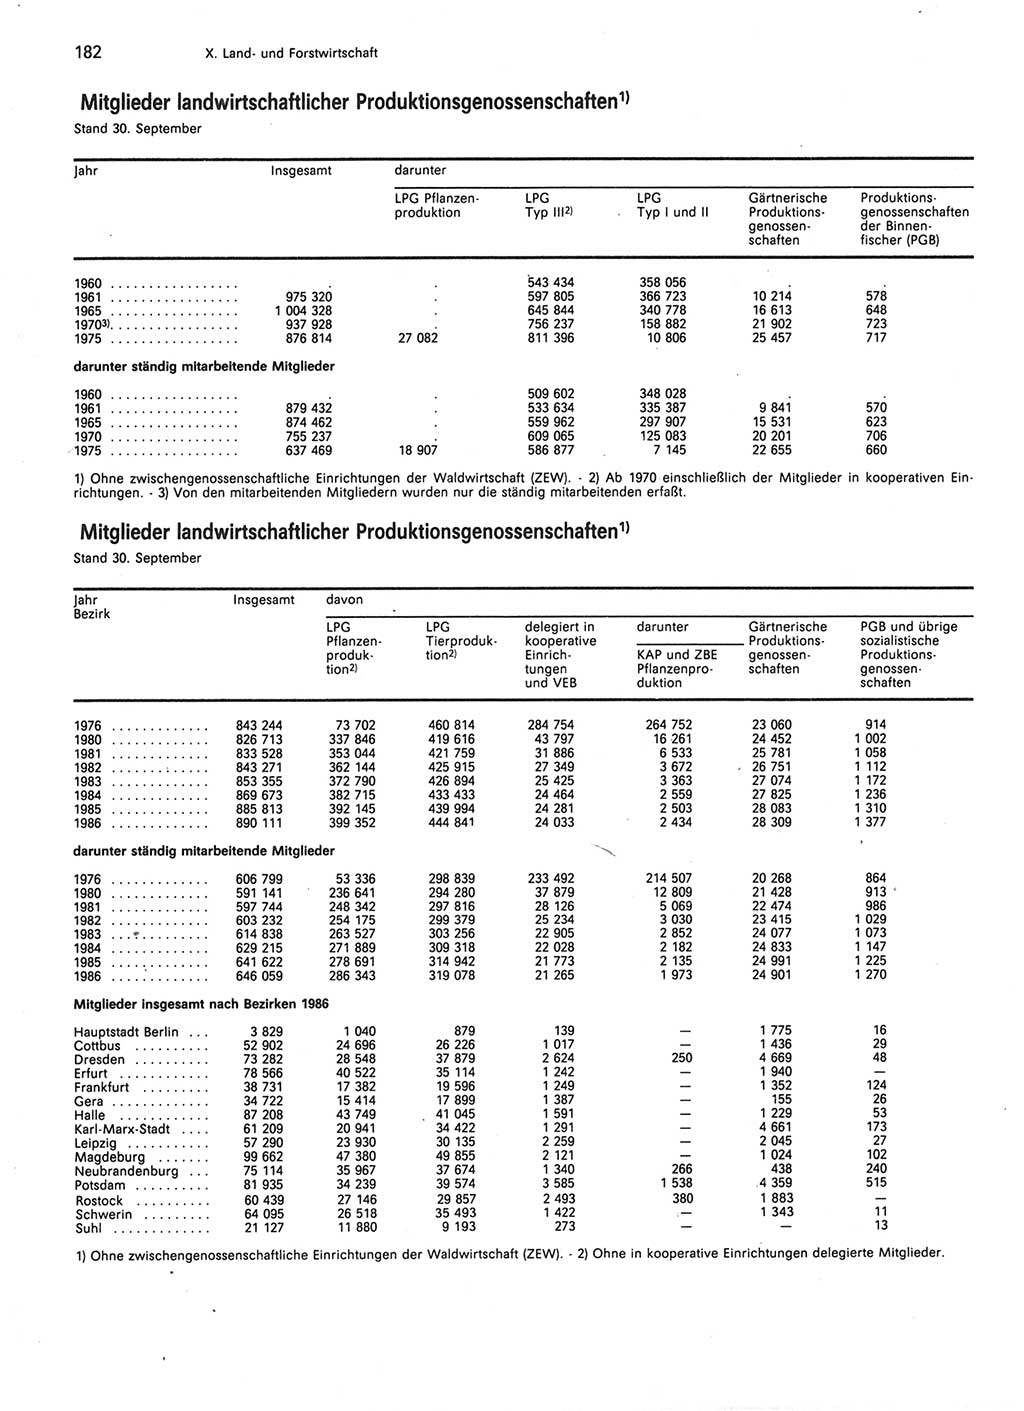 Statistisches Jahrbuch der Deutschen Demokratischen Republik (DDR) 1987, Seite 182 (Stat. Jb. DDR 1987, S. 182)